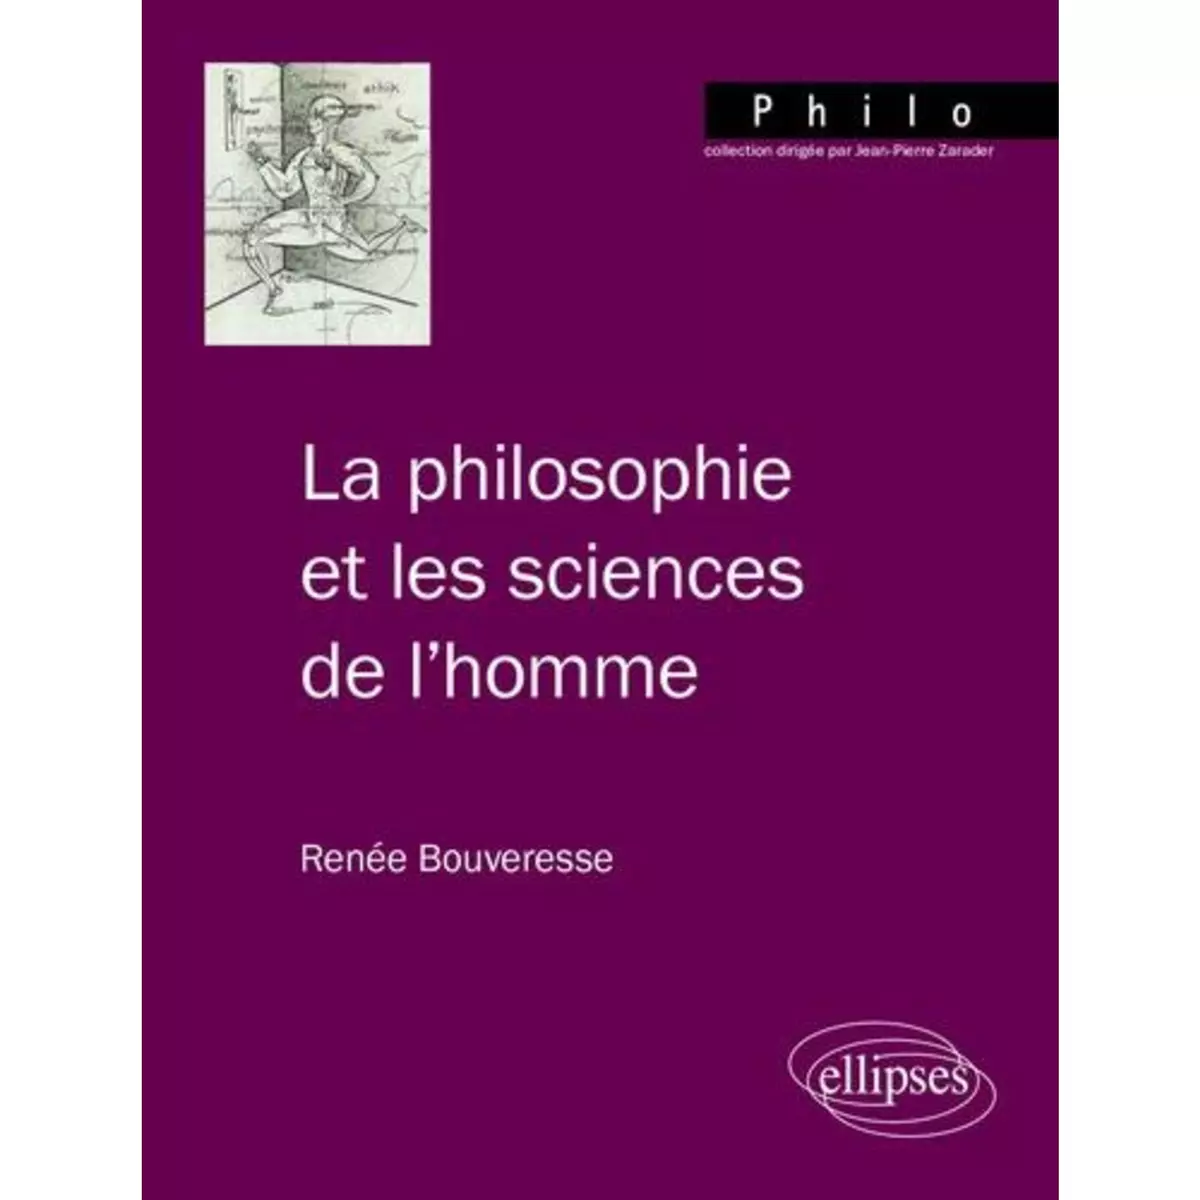  LA PHILOSOPHIE ET LES SCIENCES DE L'HOMME, Bouveresse Renée